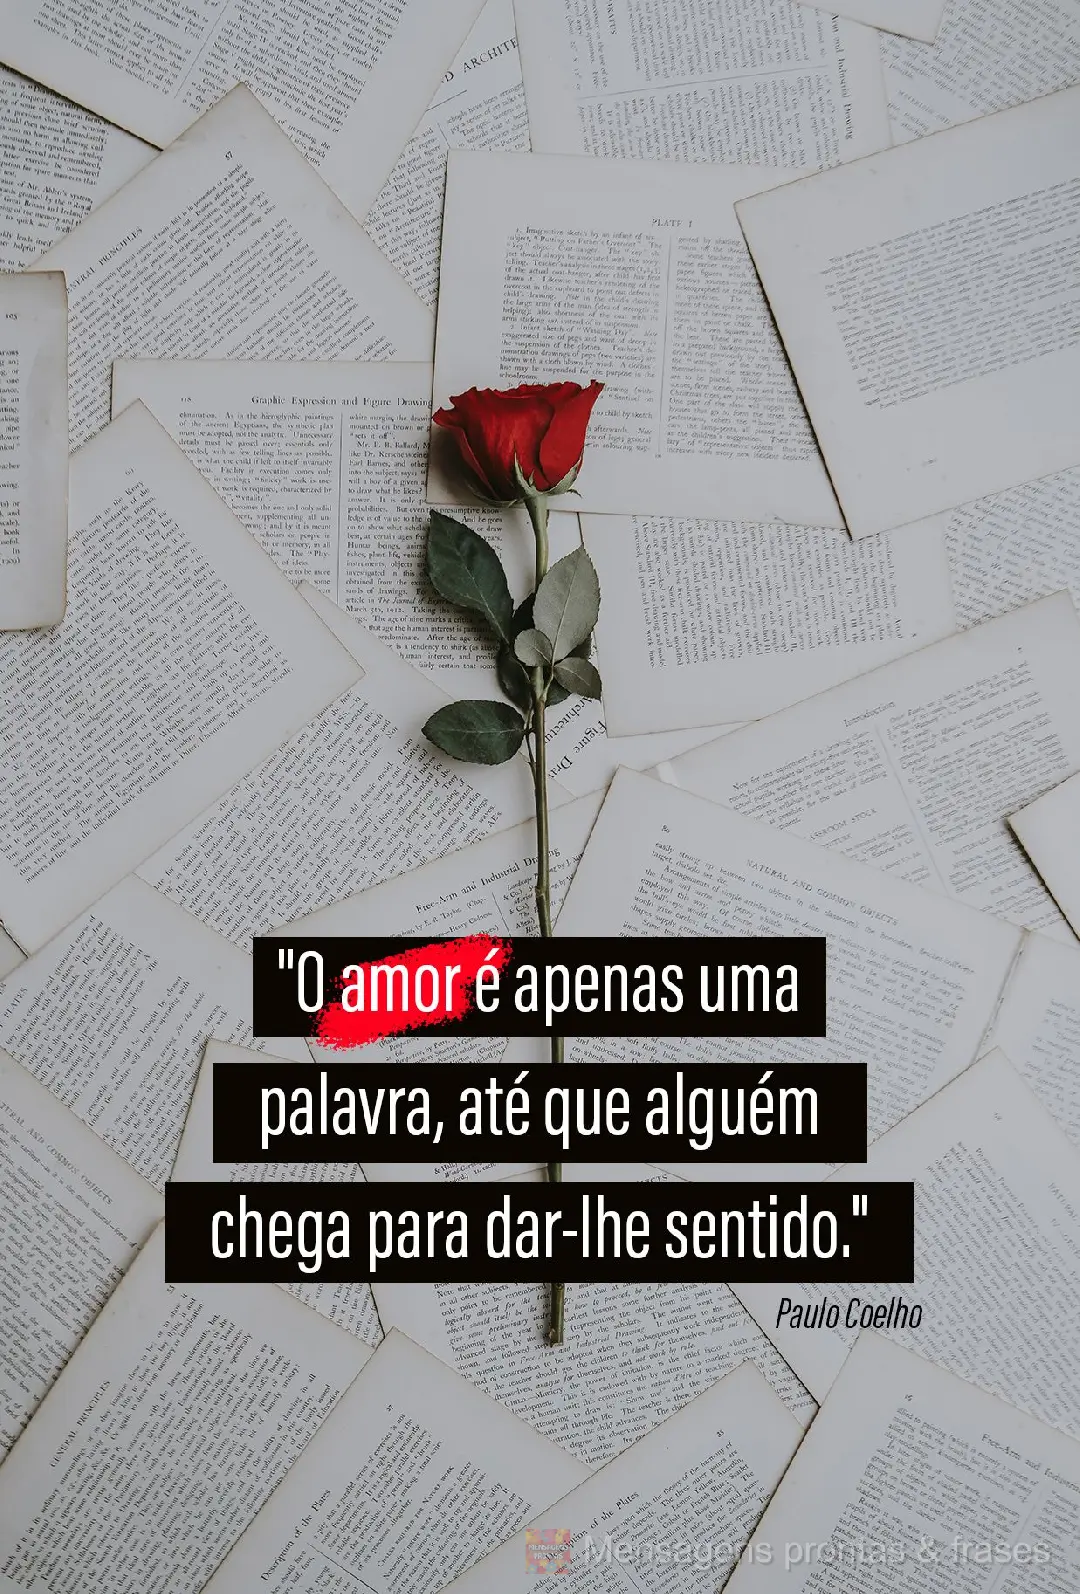 "O amor é apenas uma palavra, até que alguém chega para dar-lhe sentido."  Paulo Coelho